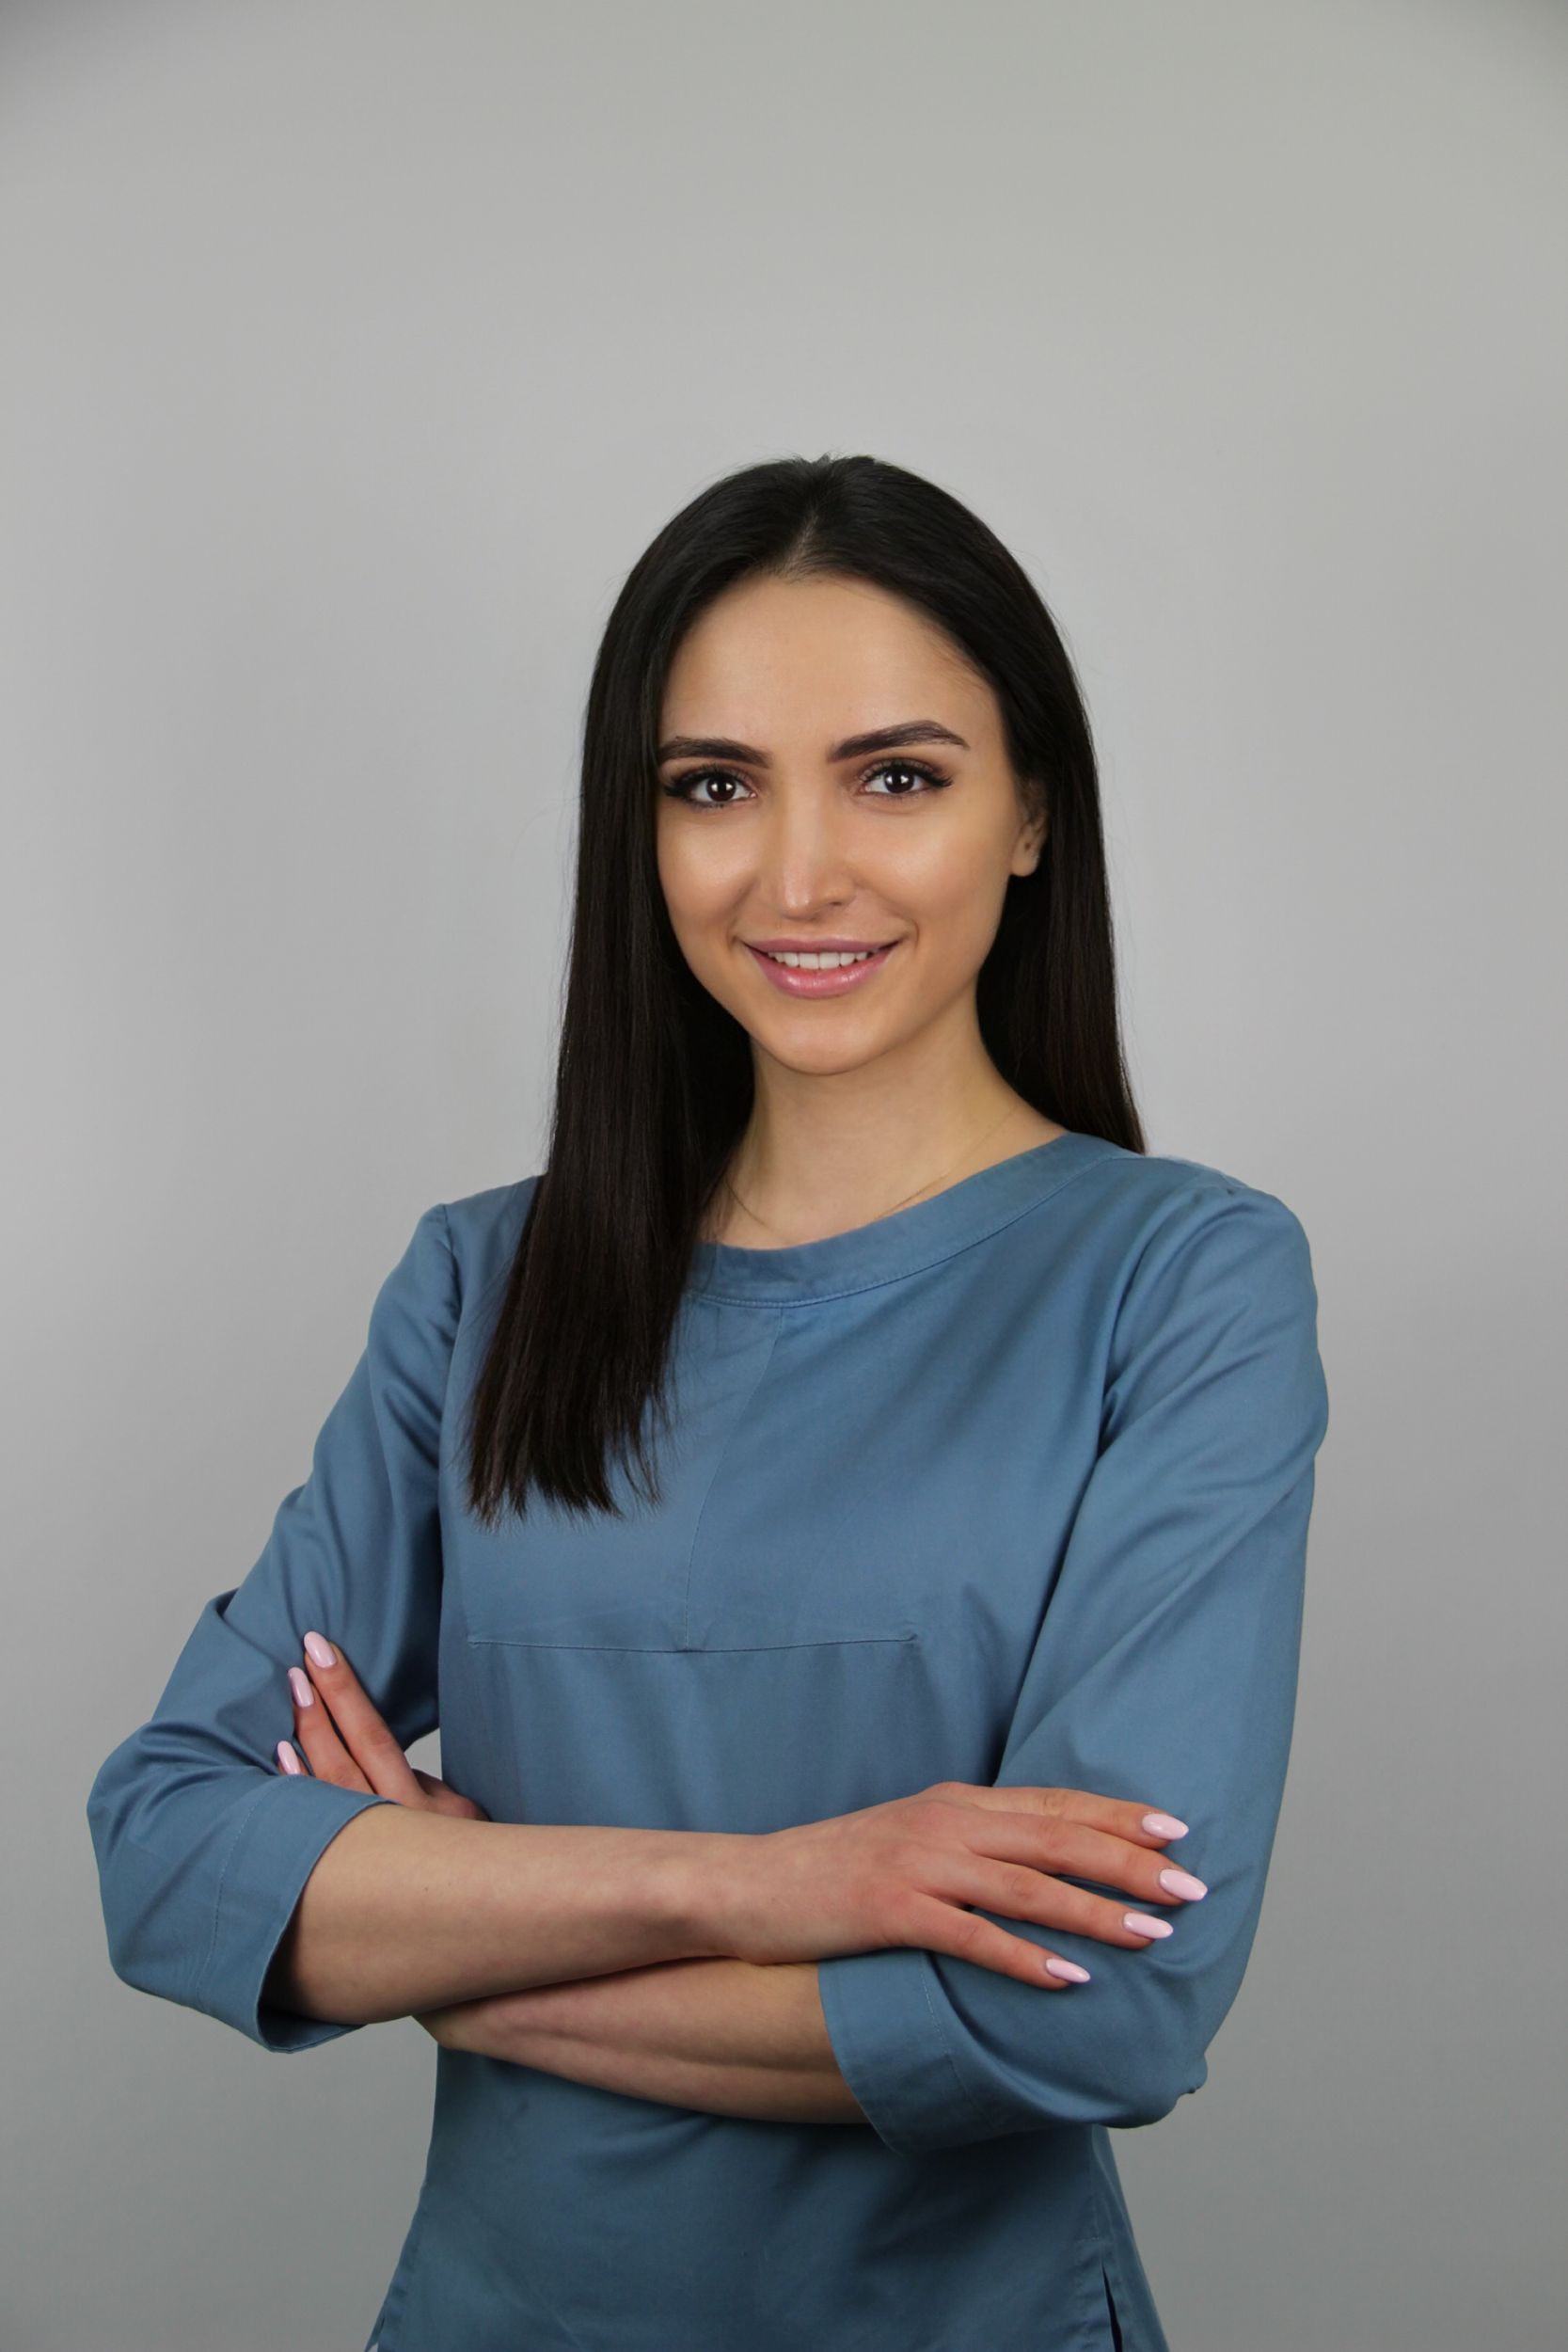 Татьяна Ищенко, фото предоставлено пиар службой Татьяны